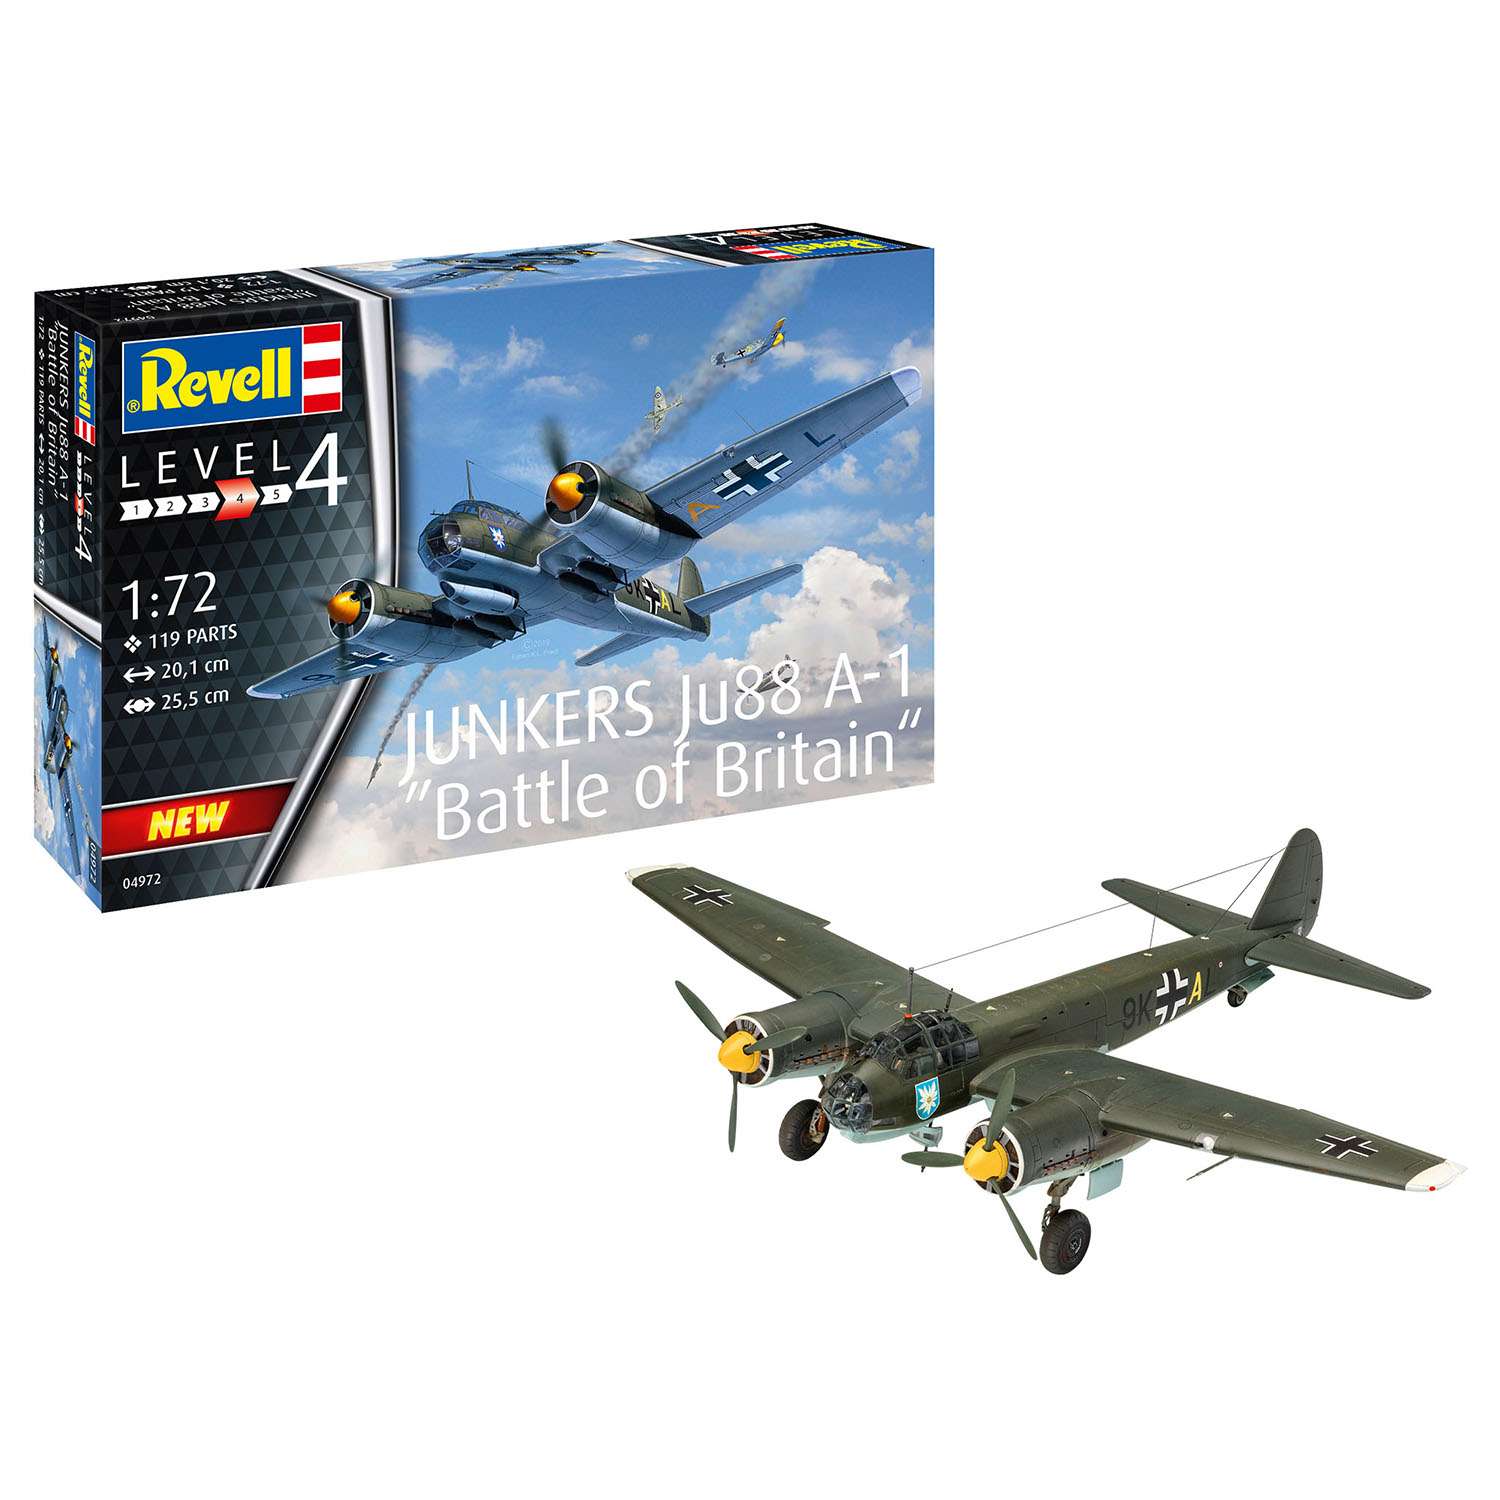 Модель для сборки Revell Скоростной средний бомбардировщик Junkers Ju88 A-1 04972 - фото 2